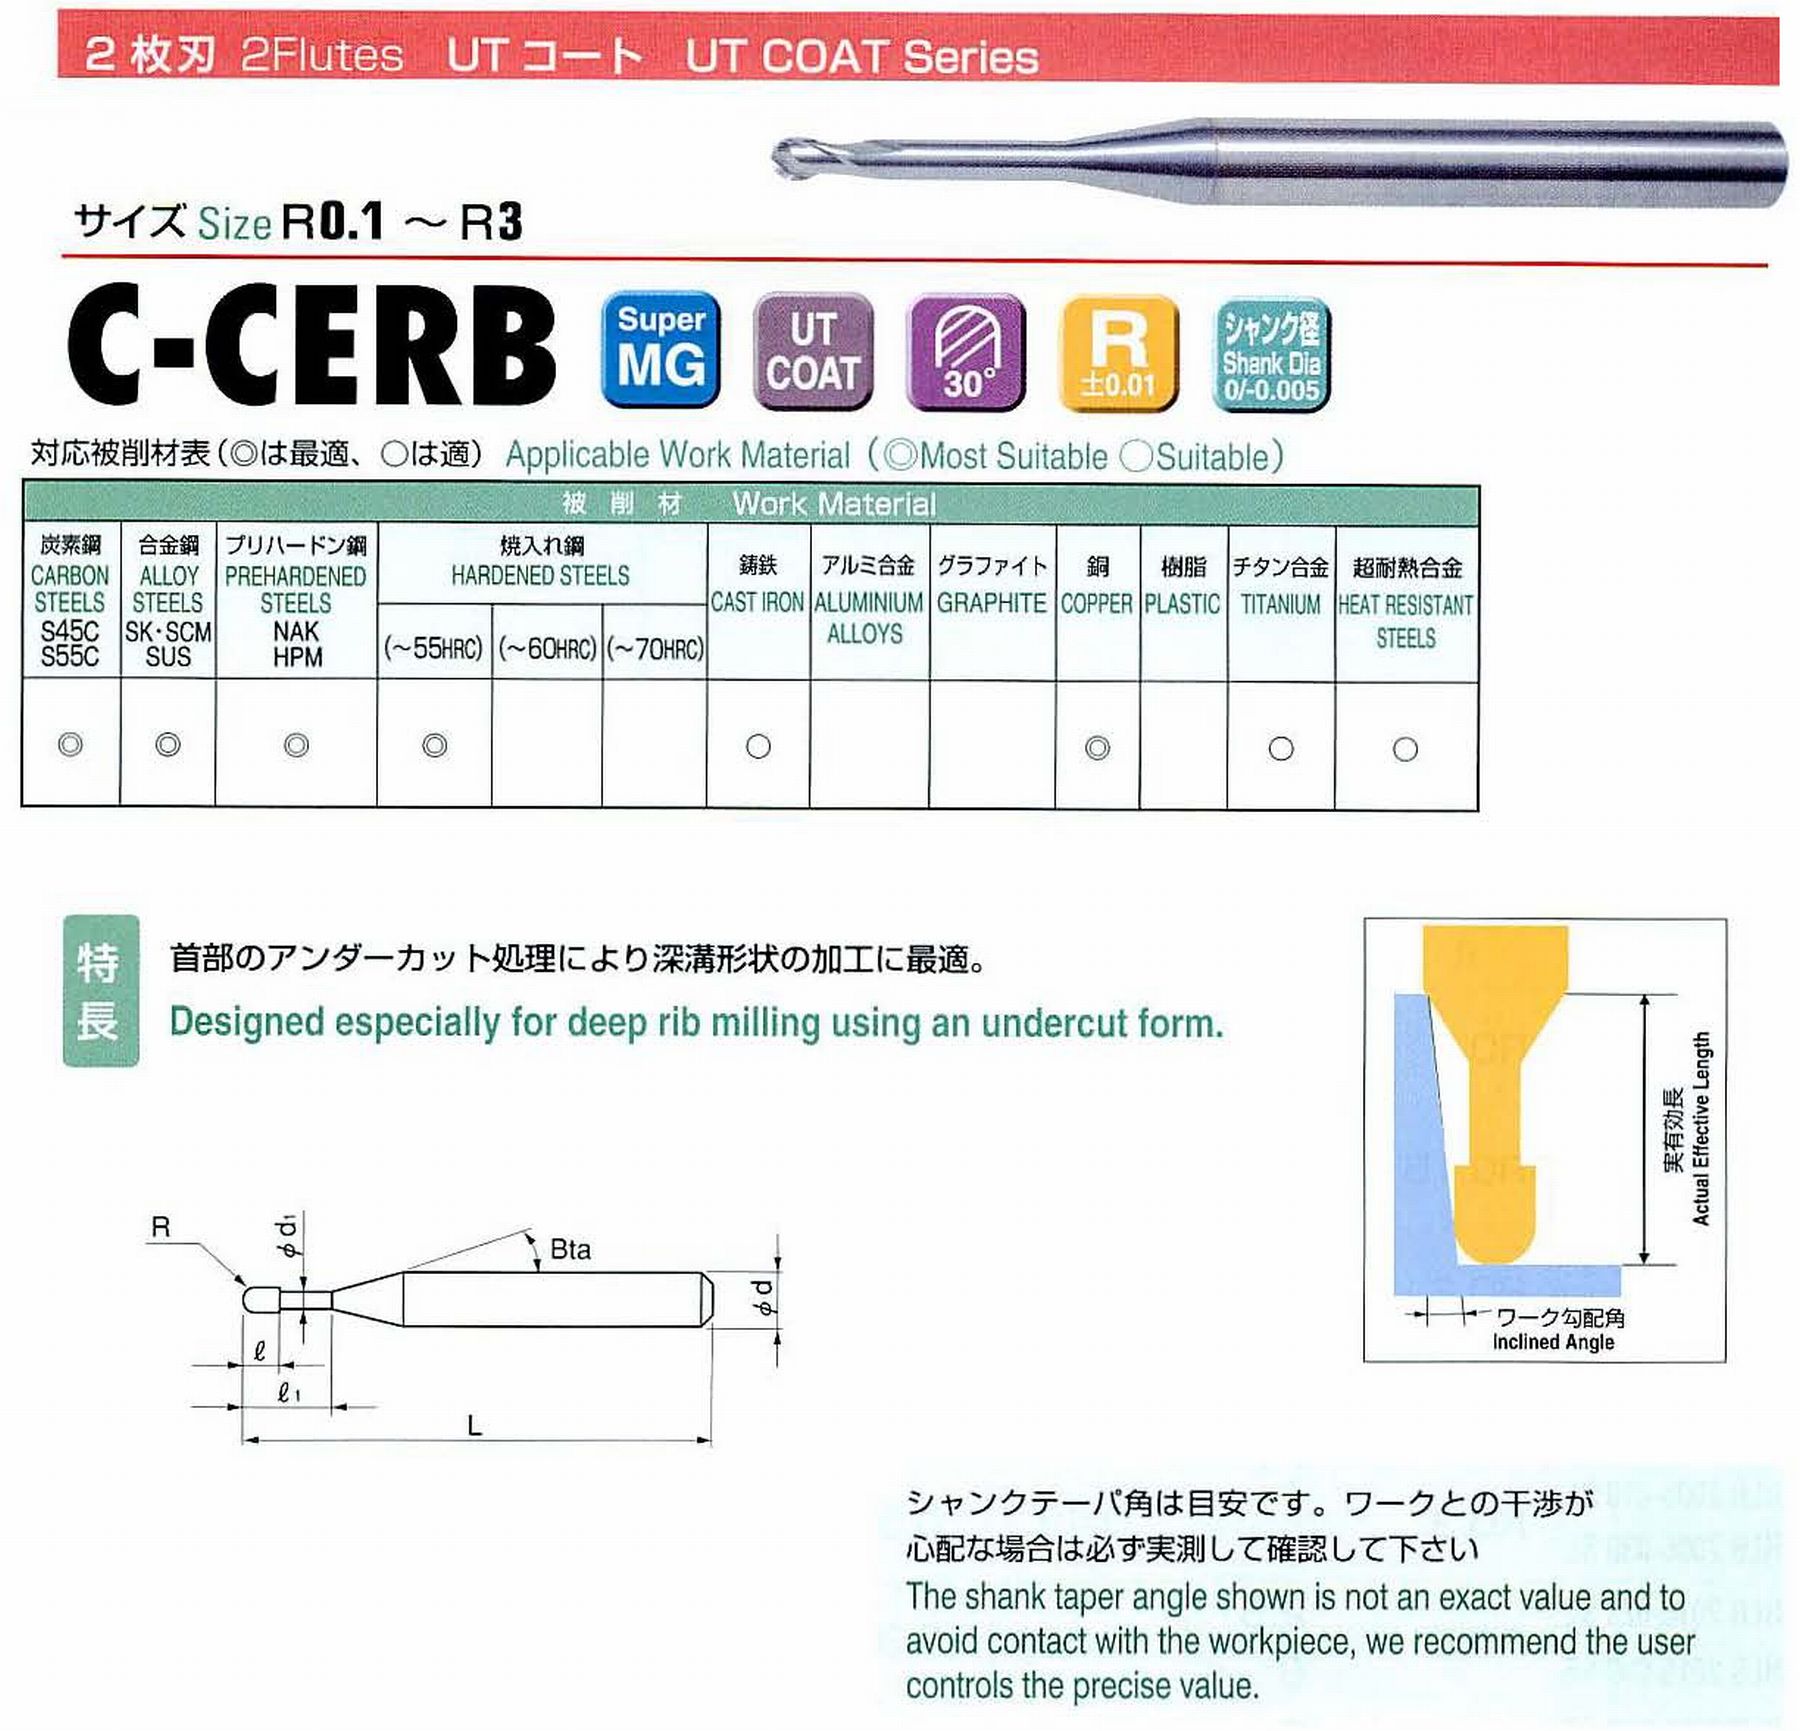 ユニオンツール 2枚刃 C-CERB2003-3 ボール半径R0.15 有効長3 刃長0.24 首径0.27 シャンクテーパ角16° 全長45 シャンク径4